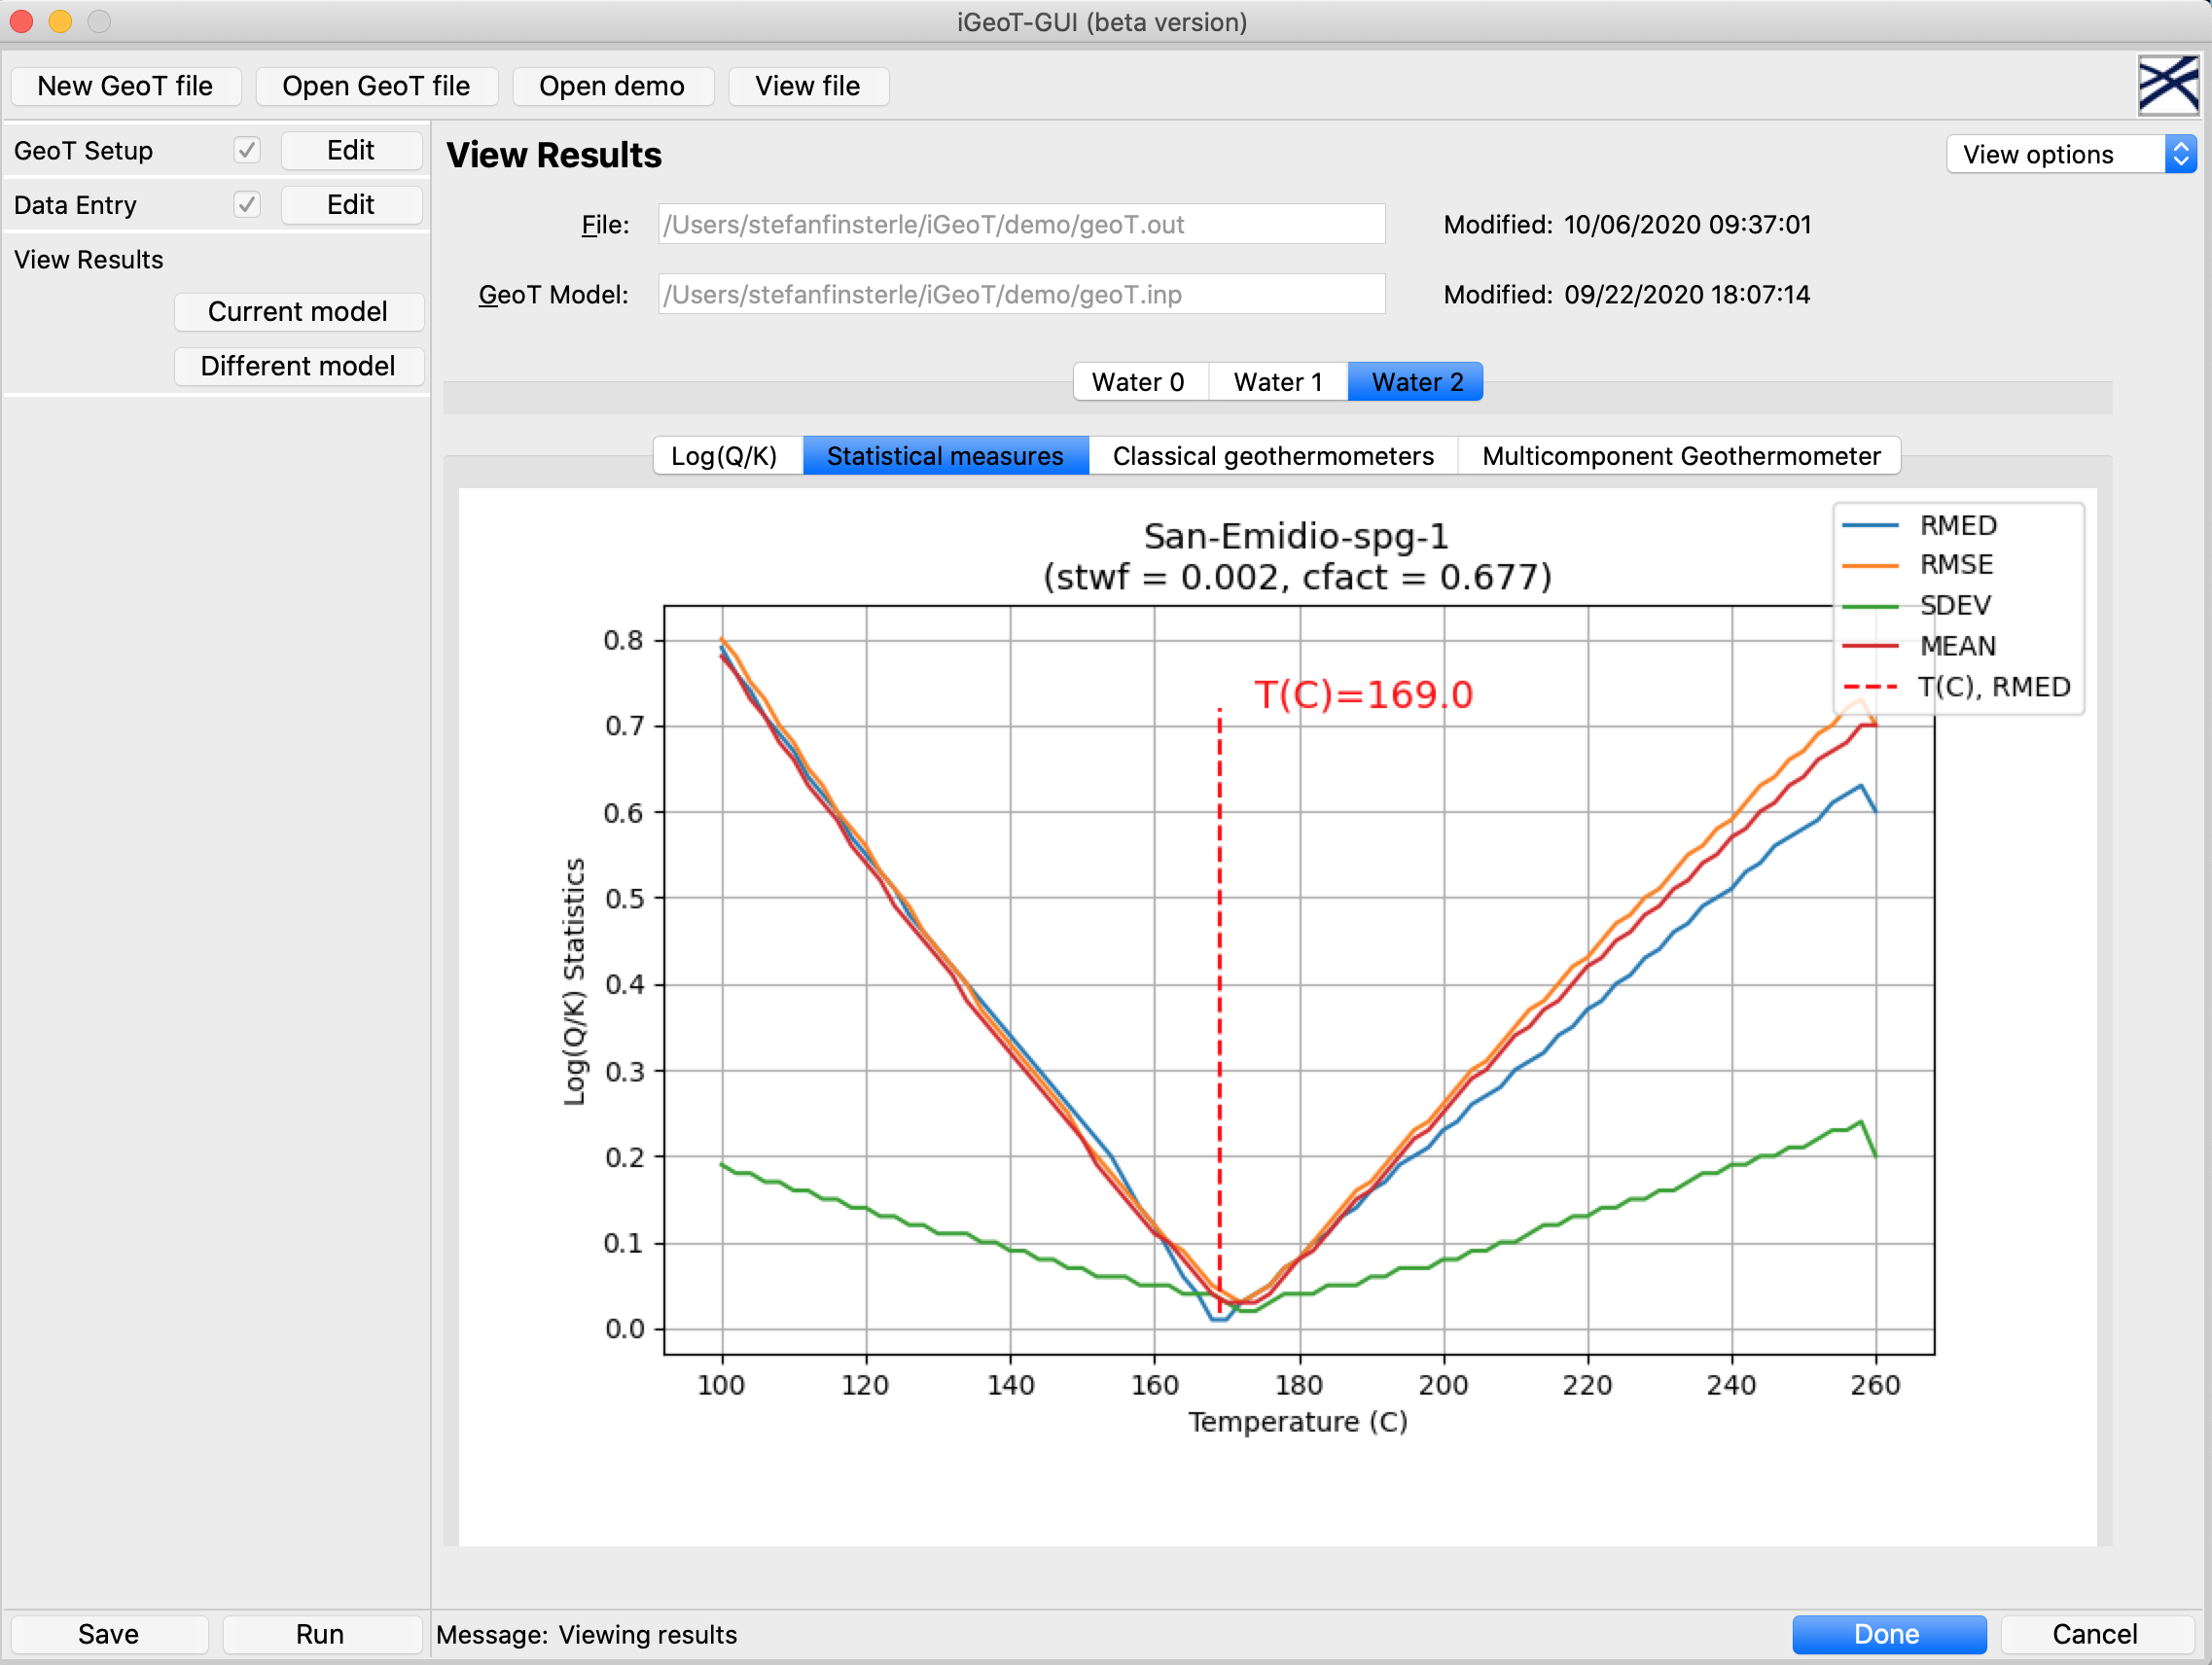 iGeoT-GUI Results Screen: Performance Mertrics